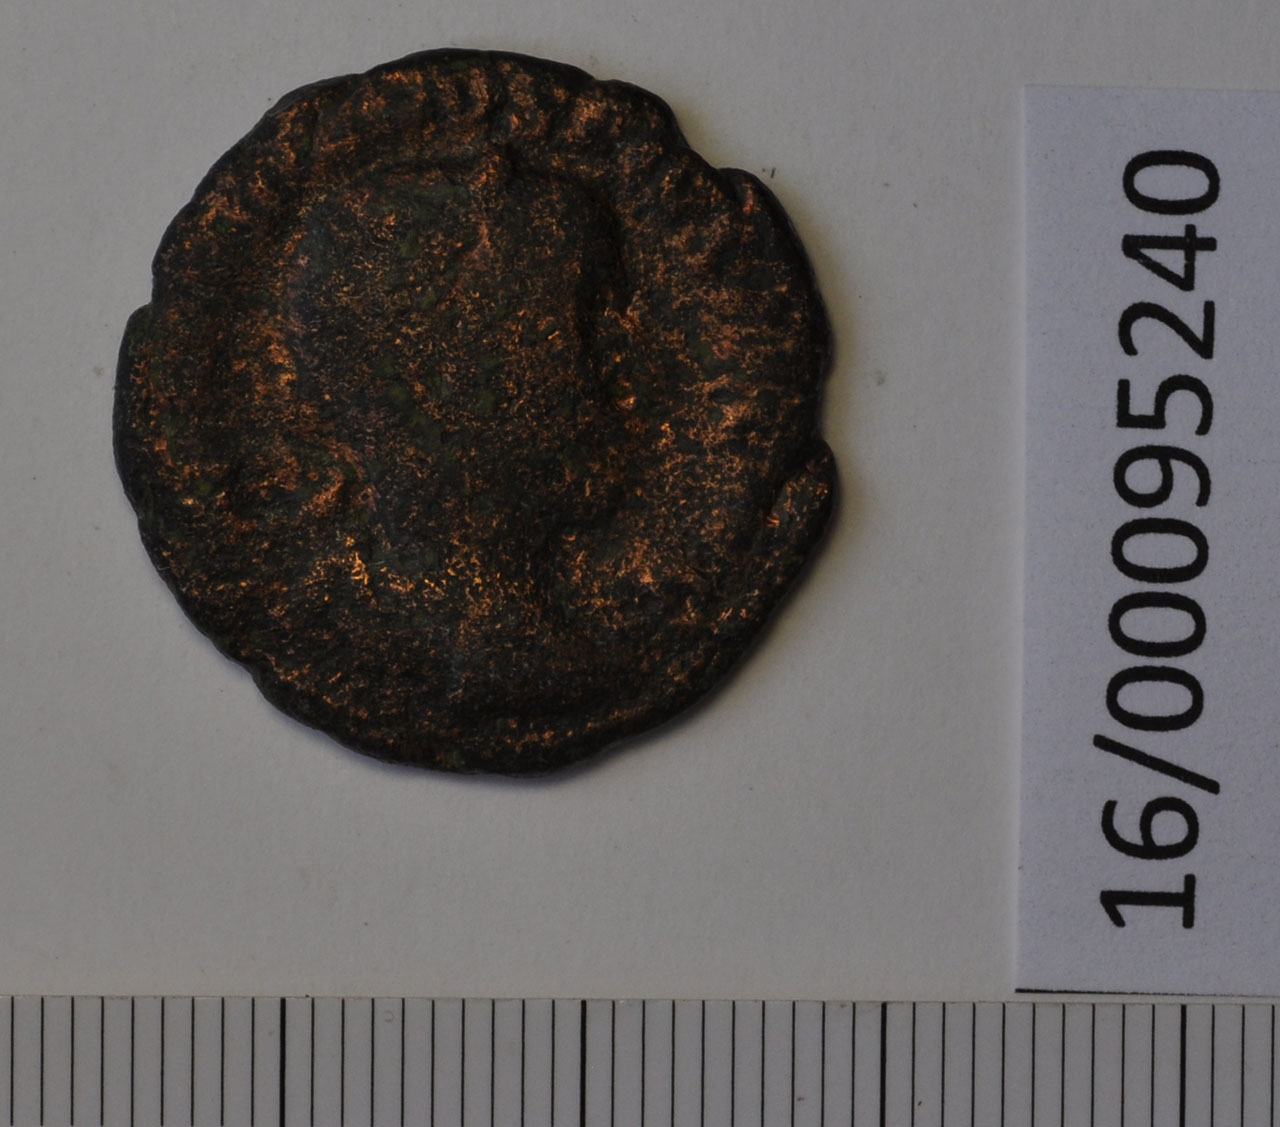 moneta (Eta' romana imperiale)